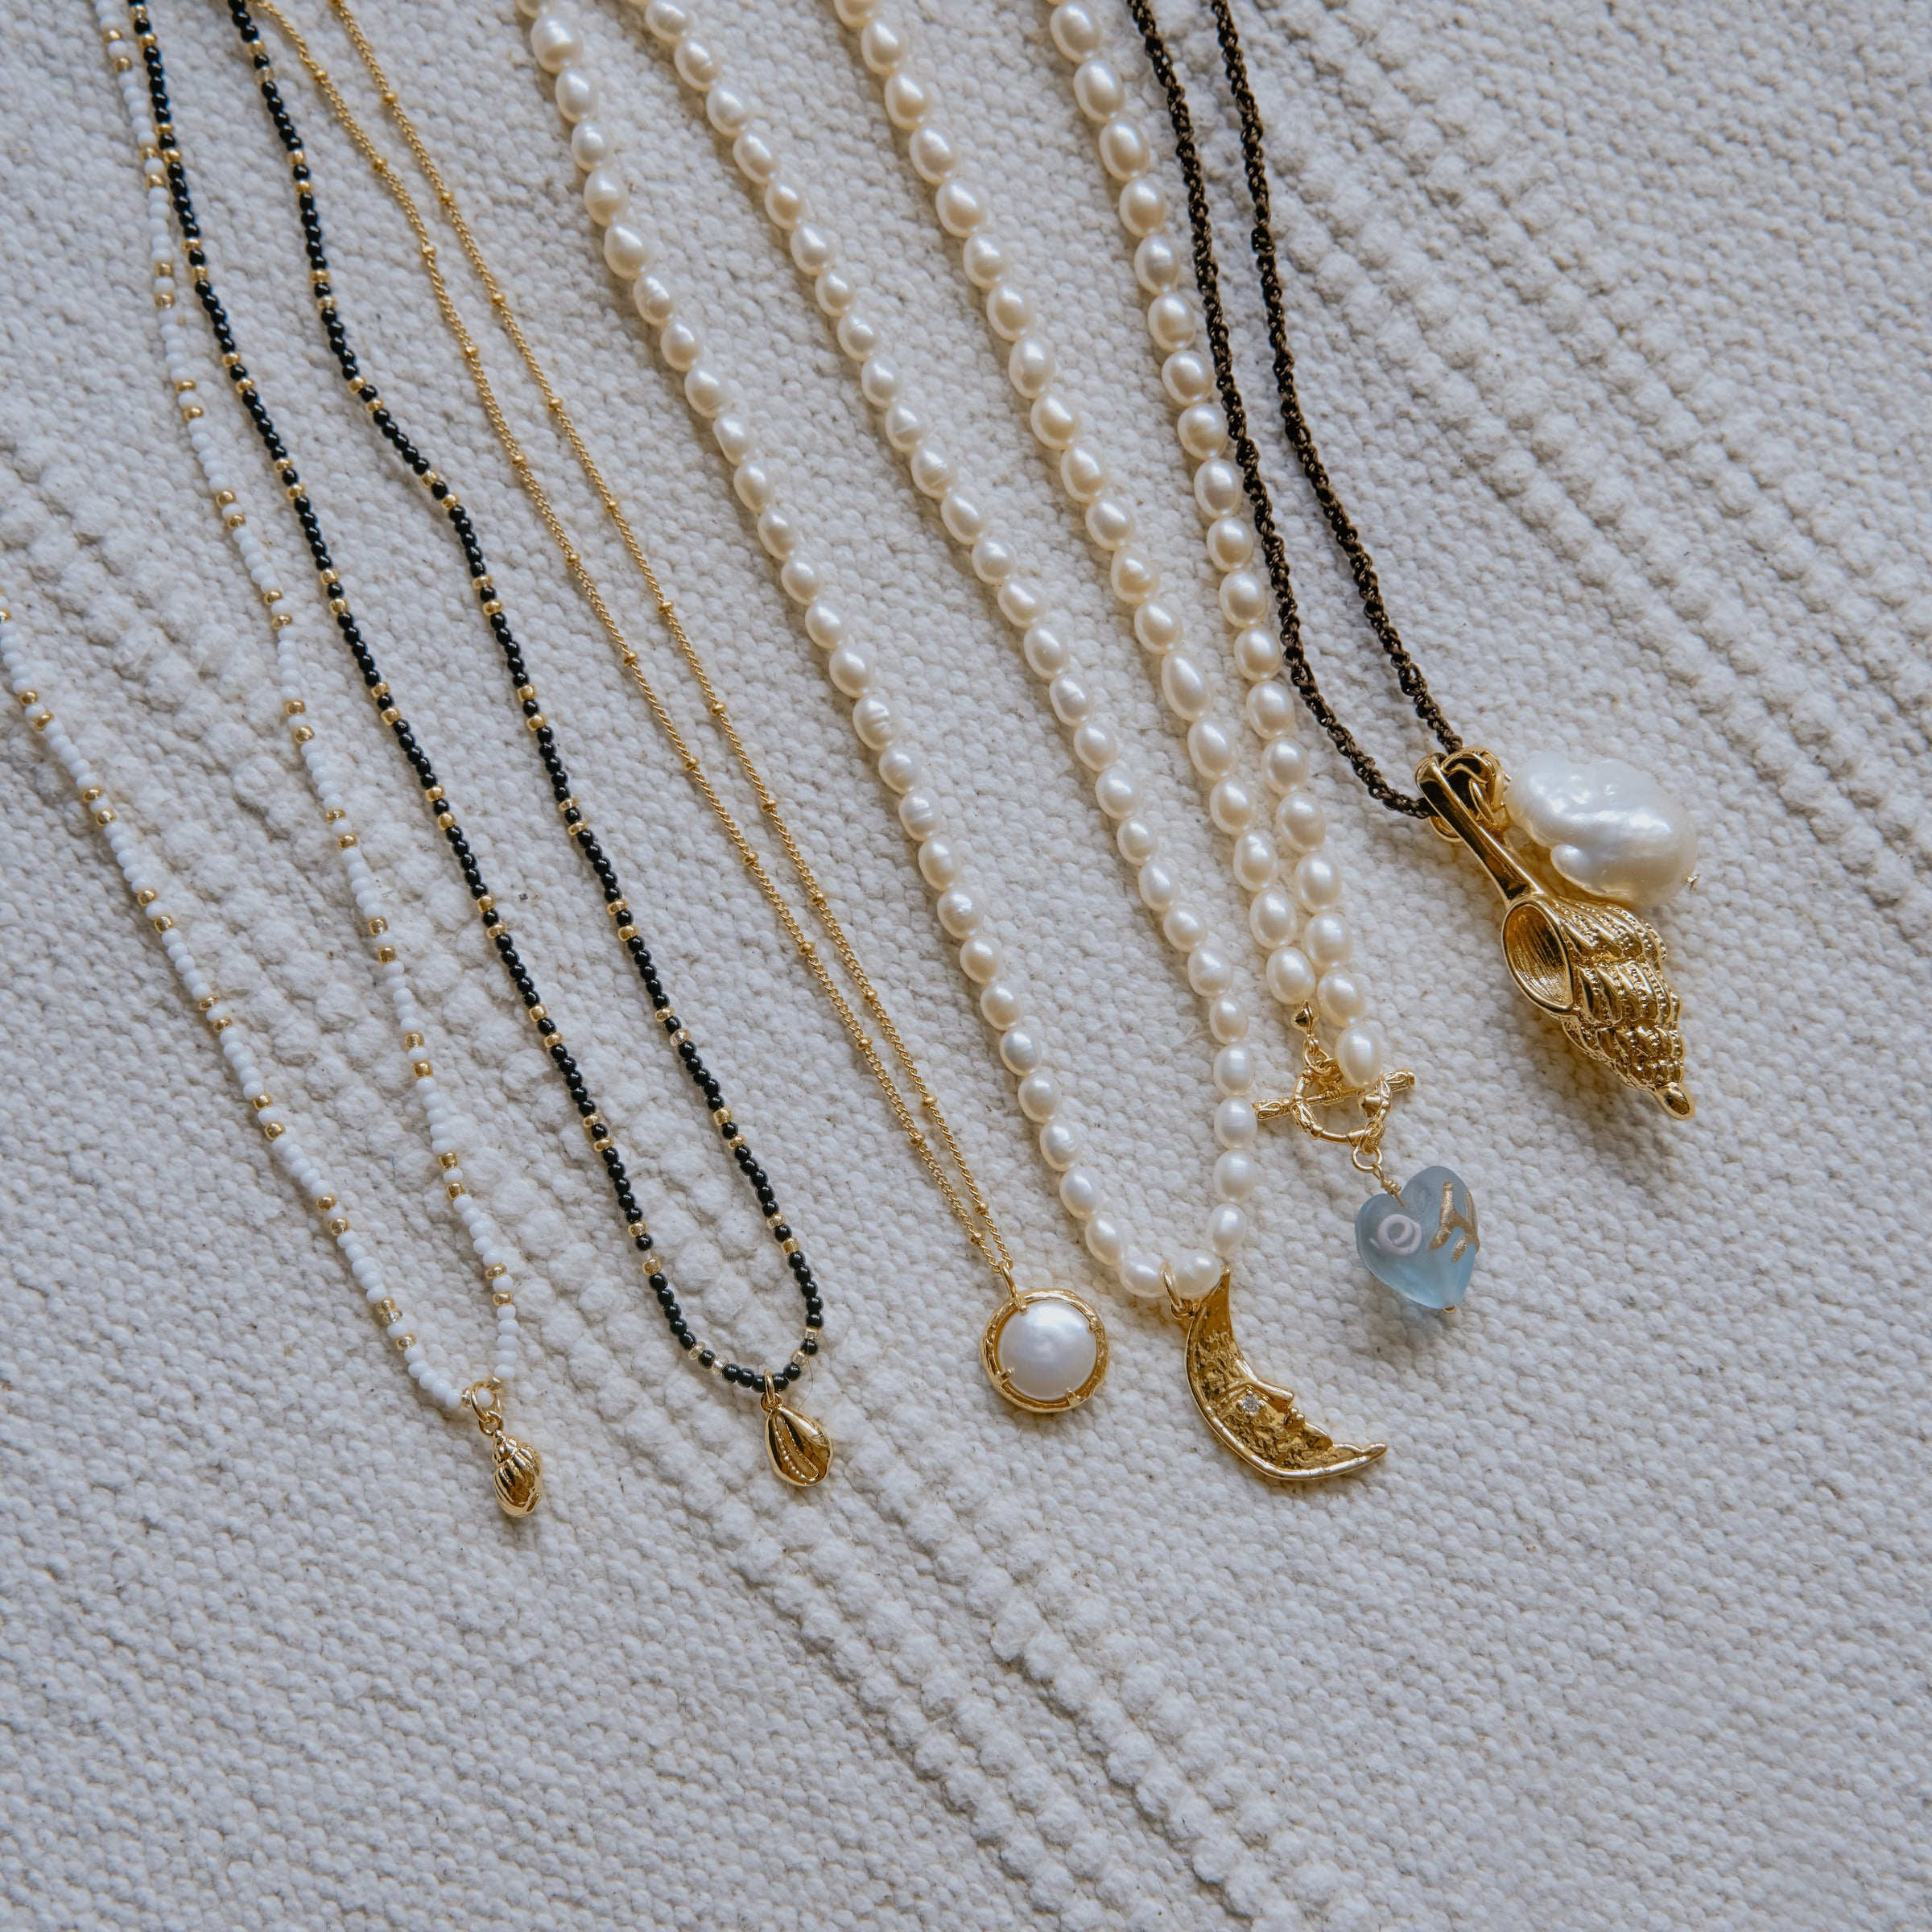 貝殼與珍珠海洋邂逅項鍊 Seashell and Pearl Necklace